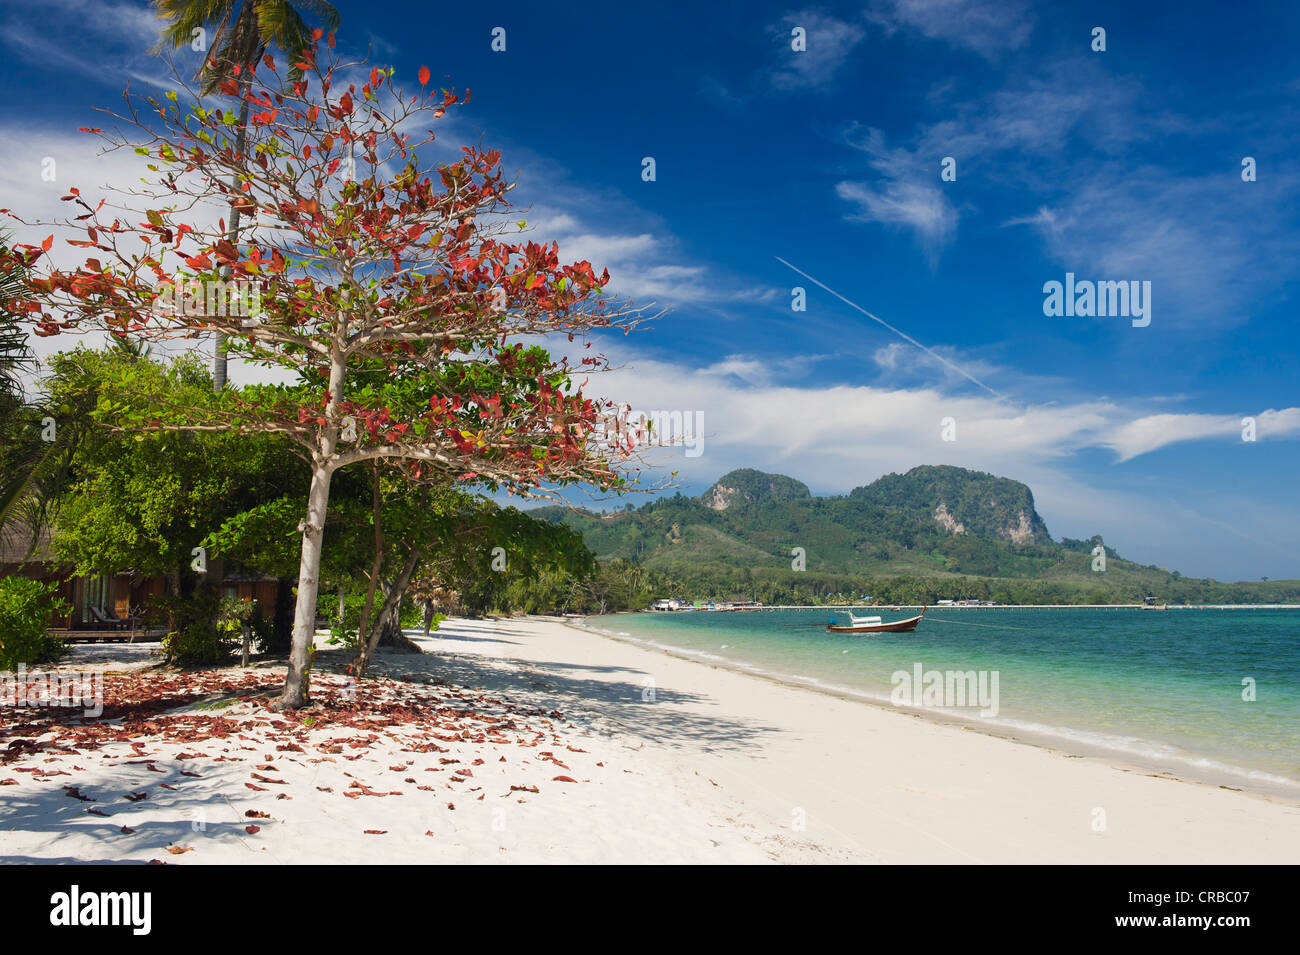 Red lasciato Tree sulla spiaggia sabbiosa, Ko Muk o Ko Mook isola, Thailandia, Sud-est asiatico Foto Stock